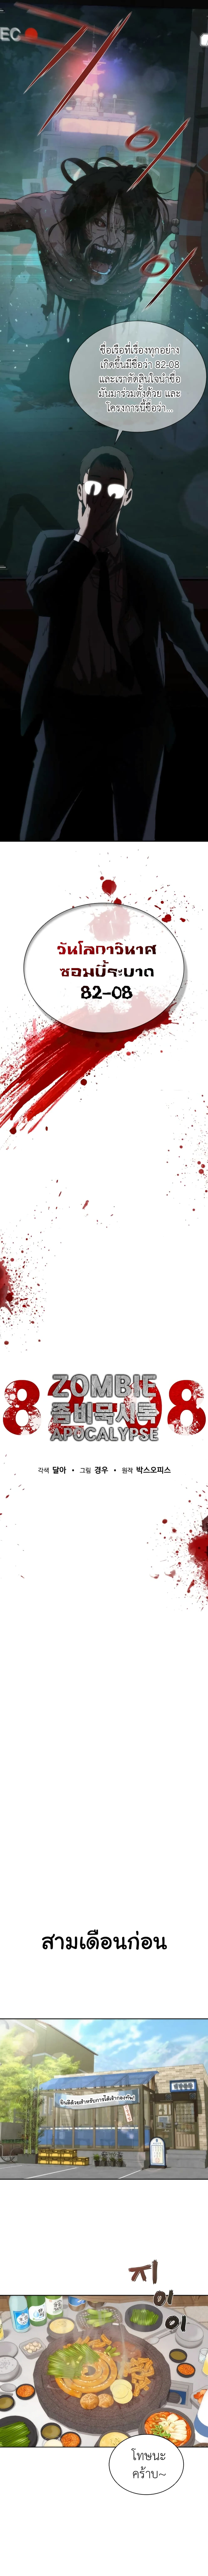 Zombie Apocalypse 82-08 1-1